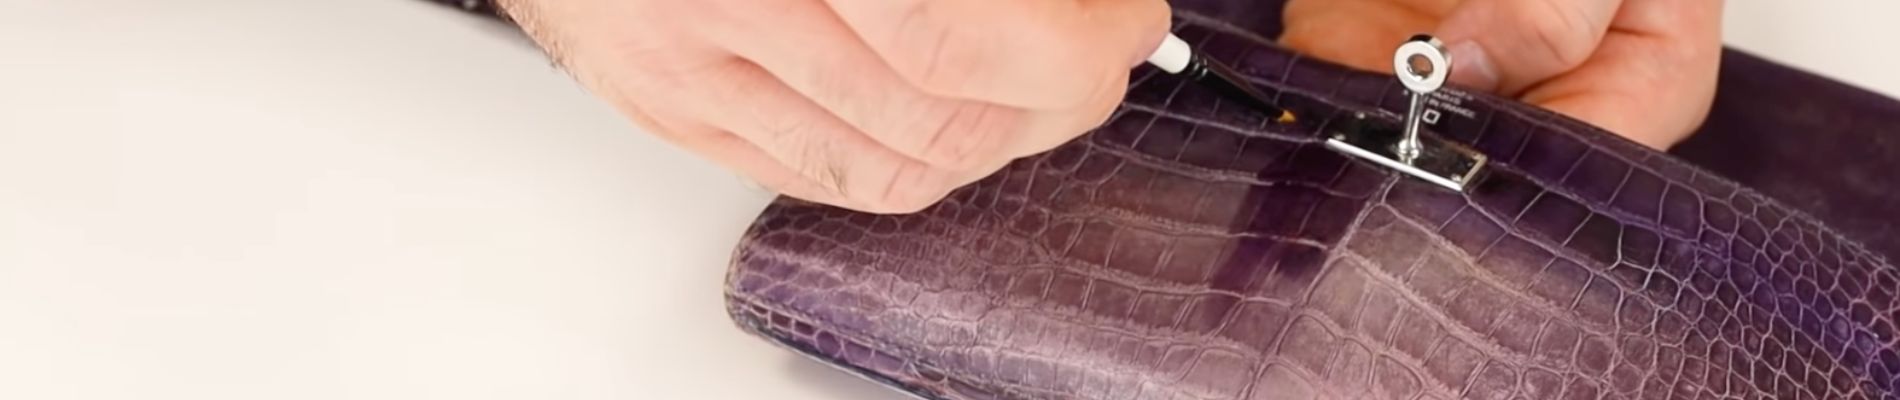 repair your exotic handbag at the handbag clinic